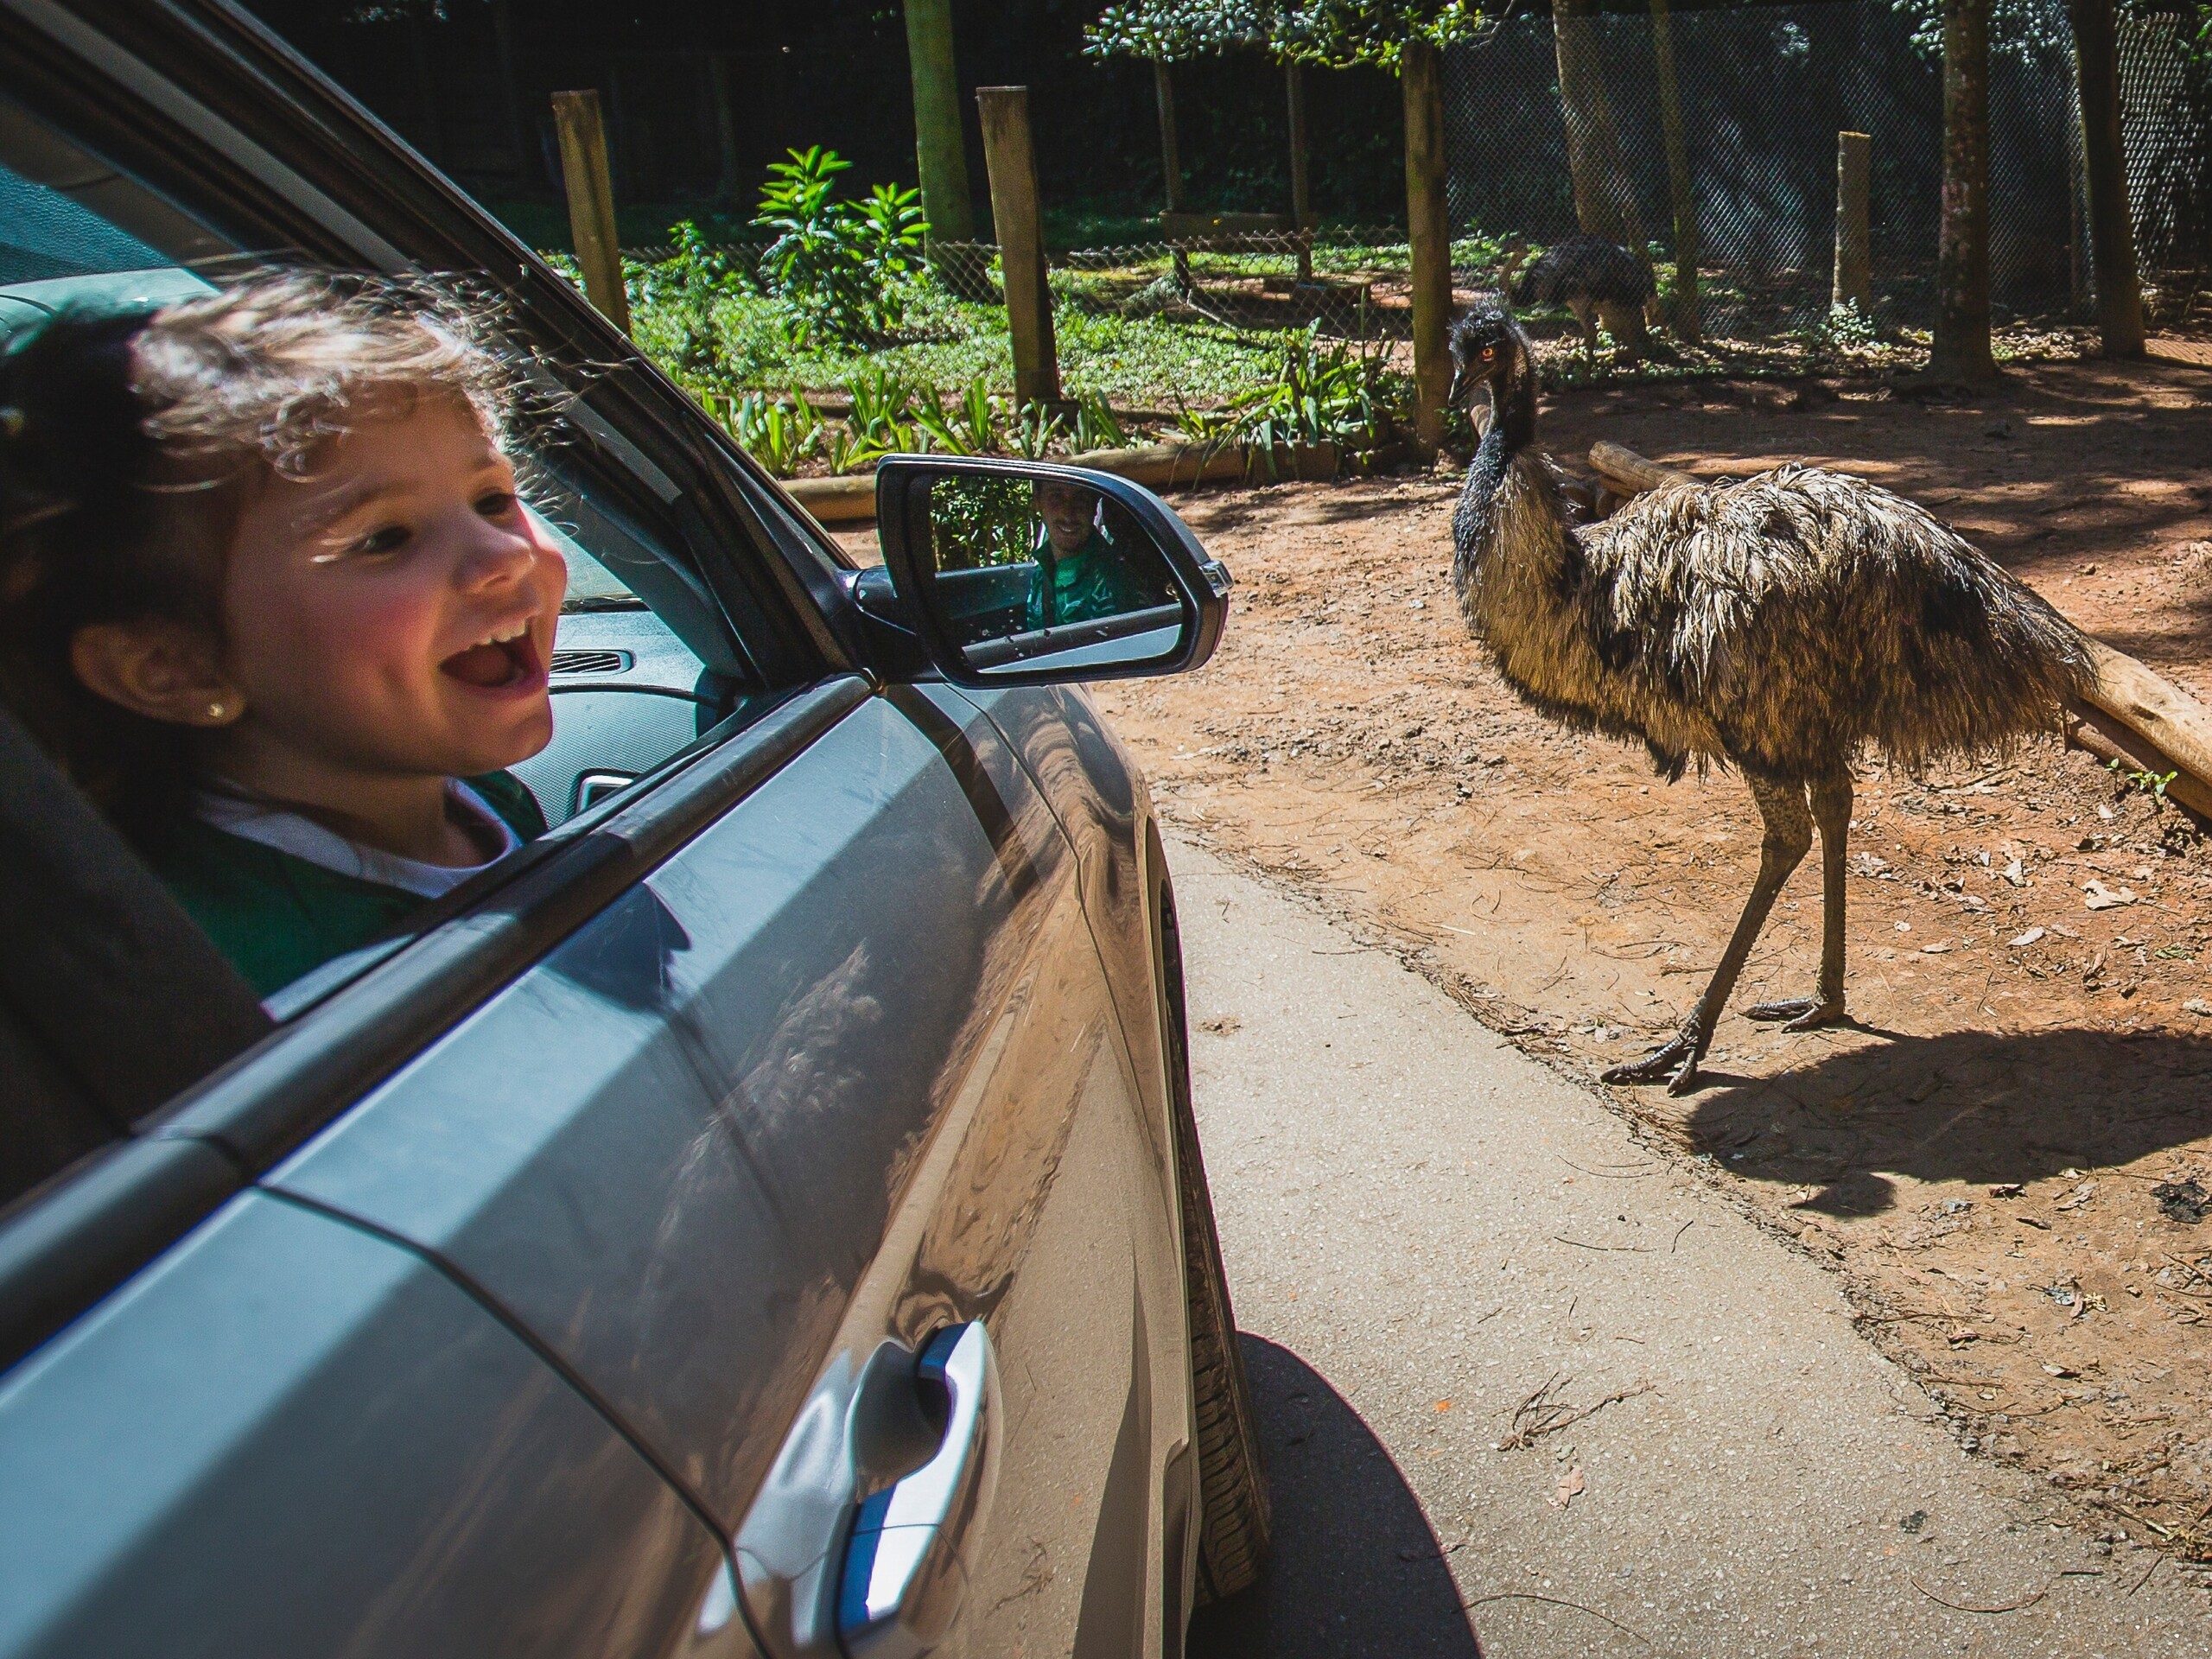 Lugares para ir com crianças em São Paulo: parques urbanos | Zoo Safári | Conexão123